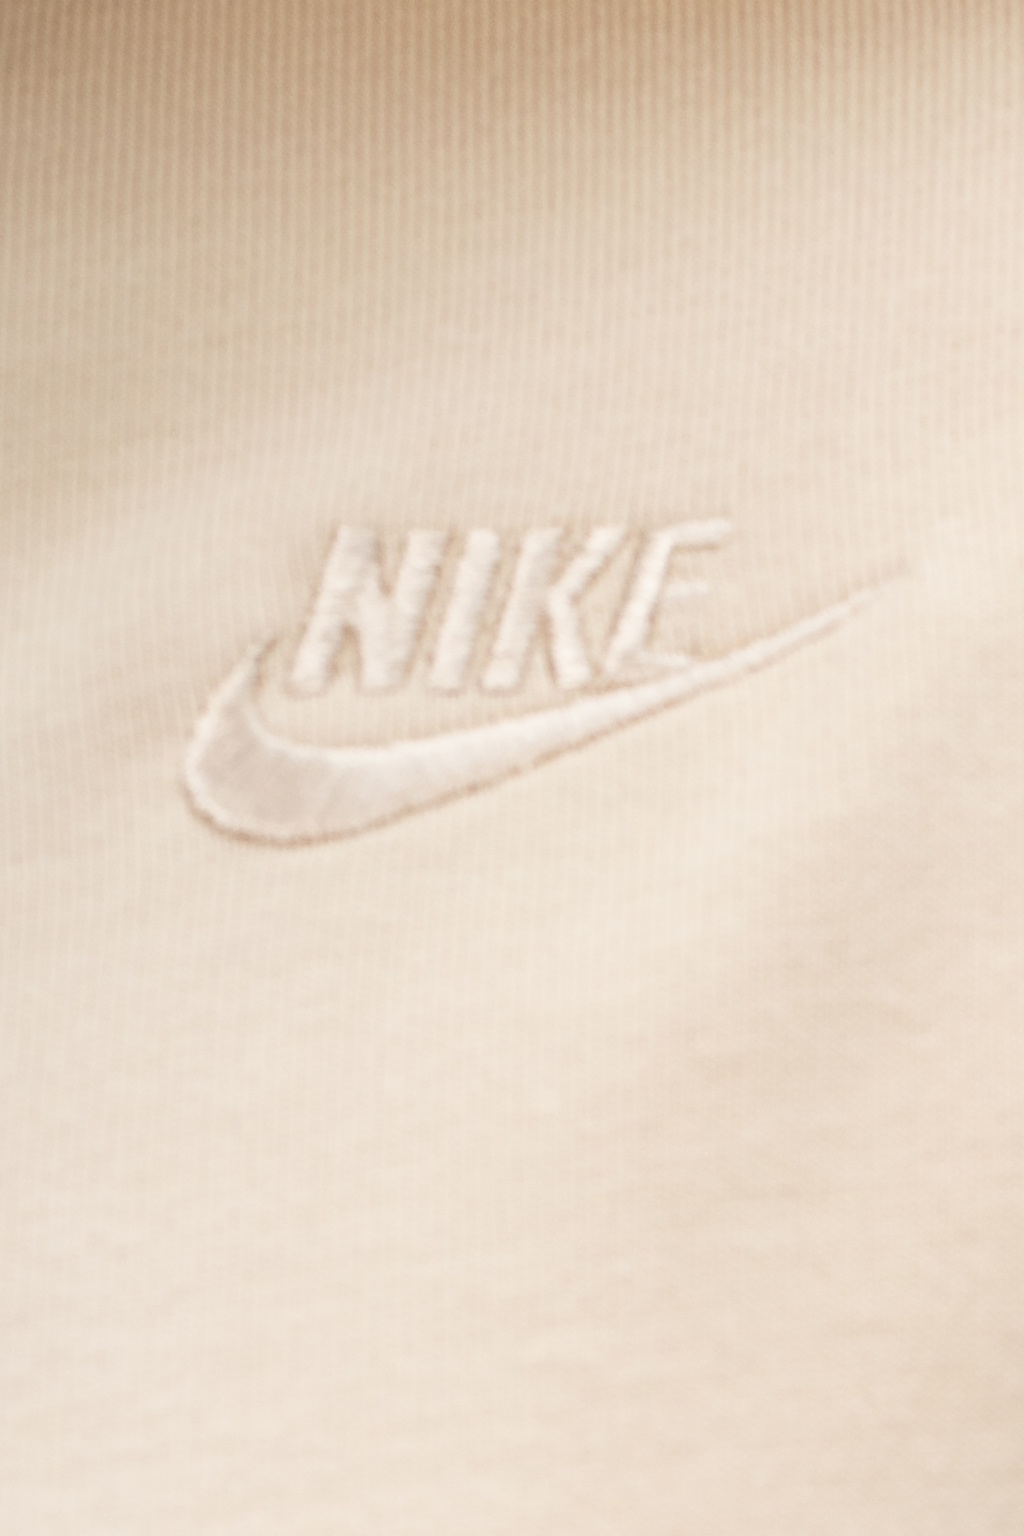 Nike Logo Beige | mail.napmexico.com.mx